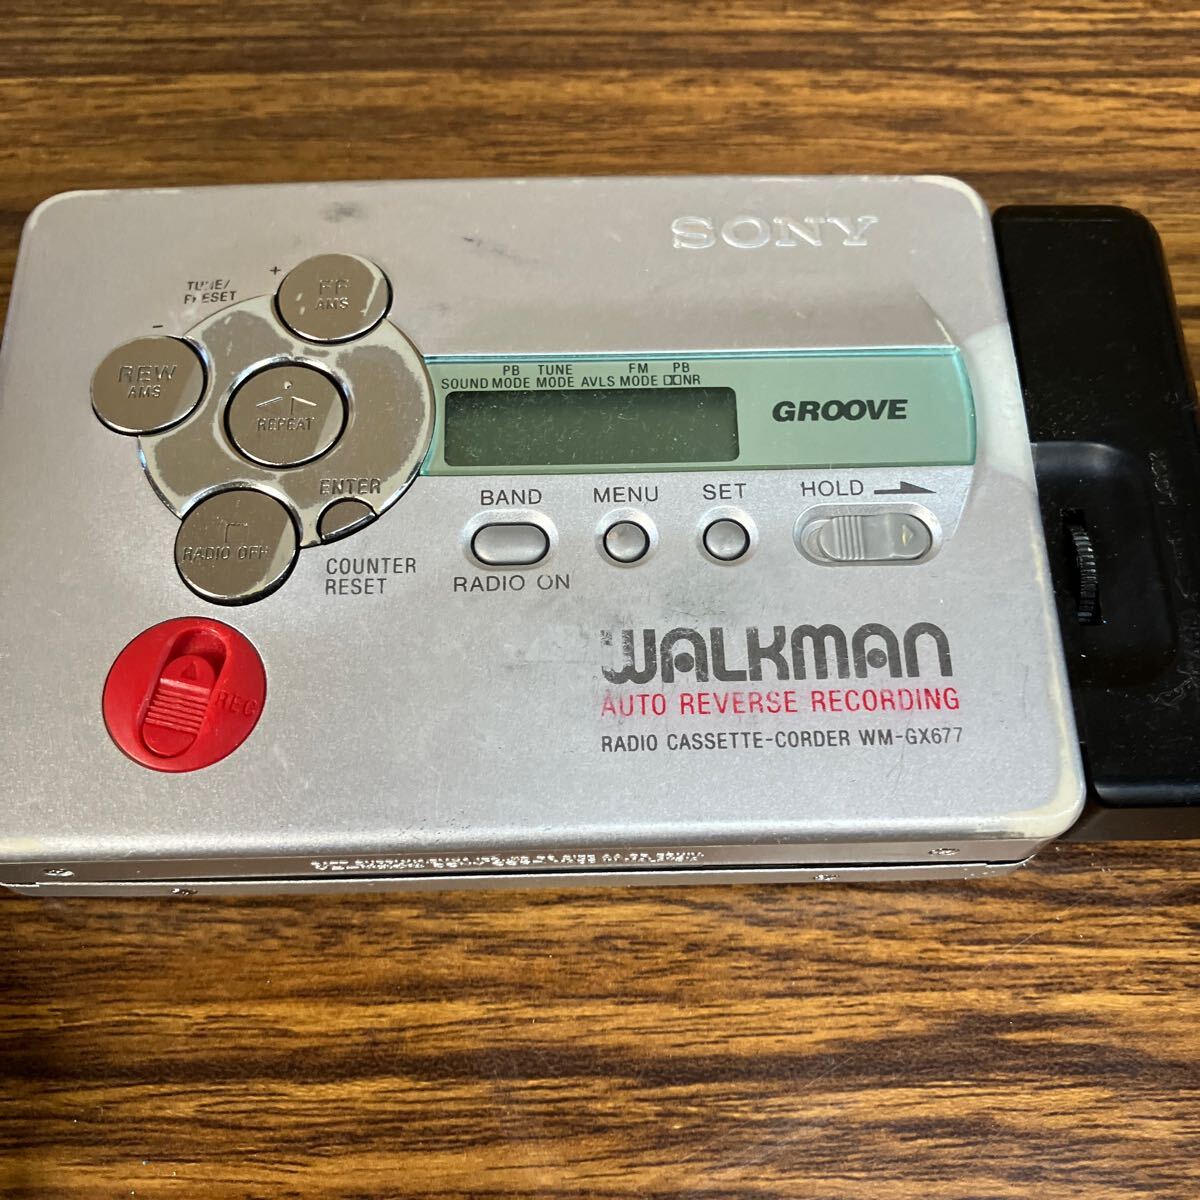 ソニー SONY ウォークマン WM-GX677 シルバー ラジオカセットコーダー Walkman 当時物_画像5